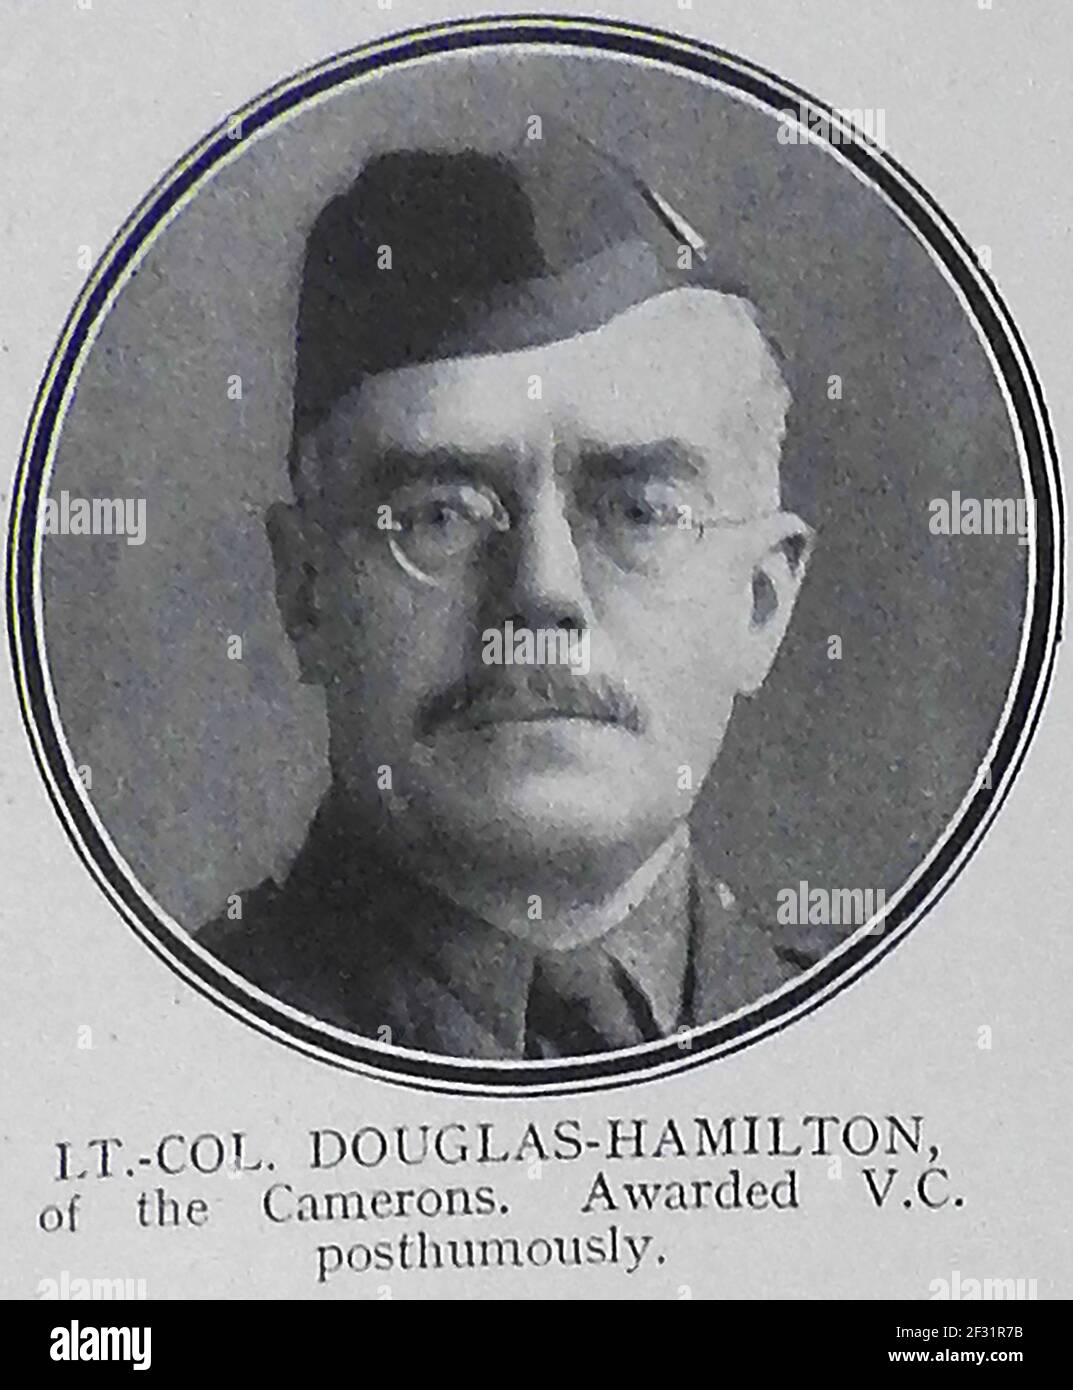 LIUETENANT COLONEL DOUGLAS-HAMILTON des Cameron Highlanders qui a reçu la Croix de Victoria à titre posthume - UN portrait imprimé d'une page de rôle d'honneur de 1914-1915 de ceux tués en action pendant la première Guerre mondiale. Banque D'Images